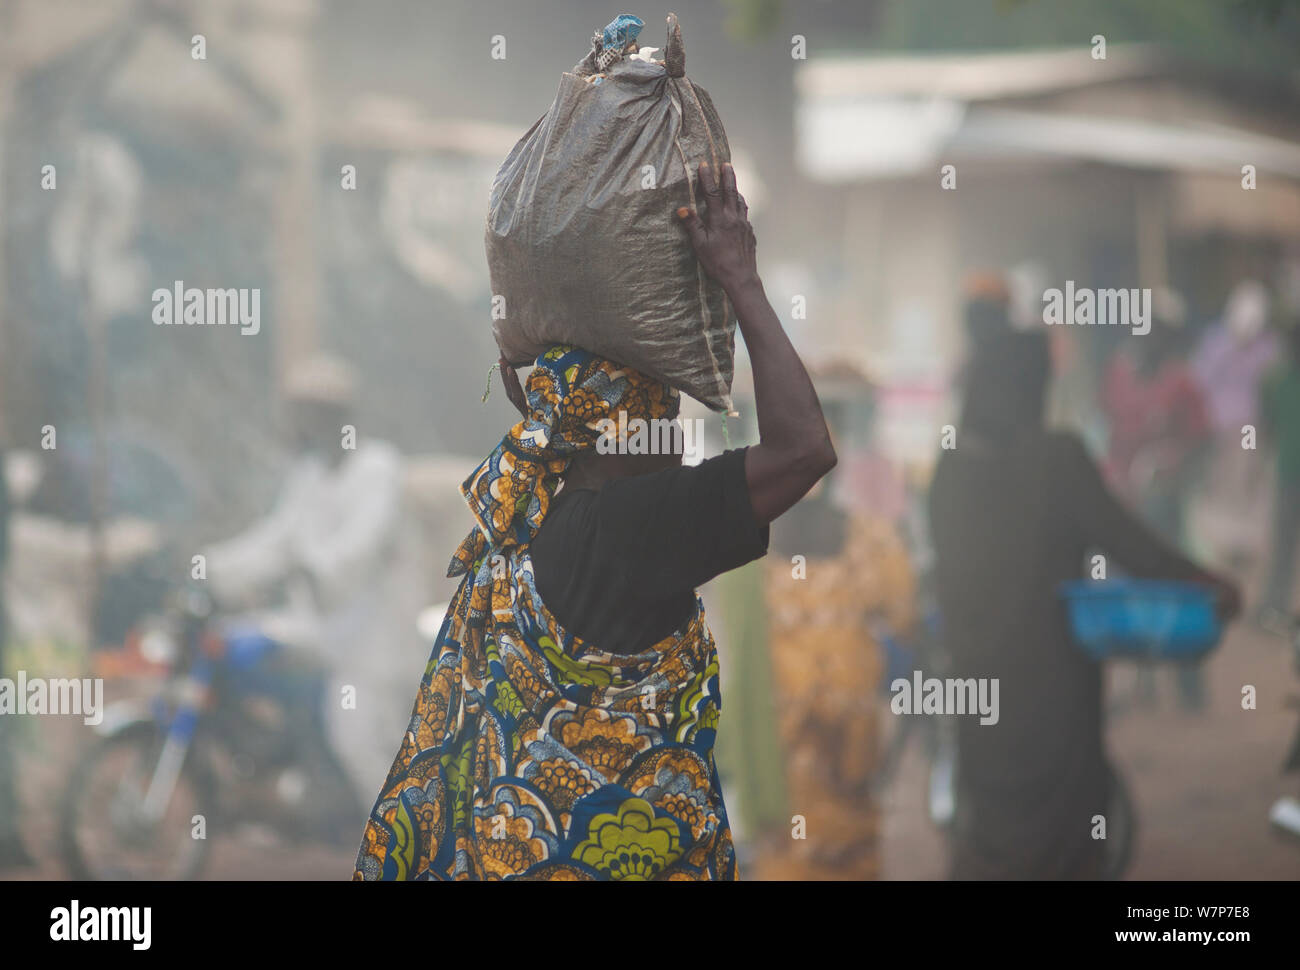 Marché de rue avec femme transportant sac de charbon sur sa tête. Maroua, Cameroun du nord, Septembre 2009 Banque D'Images